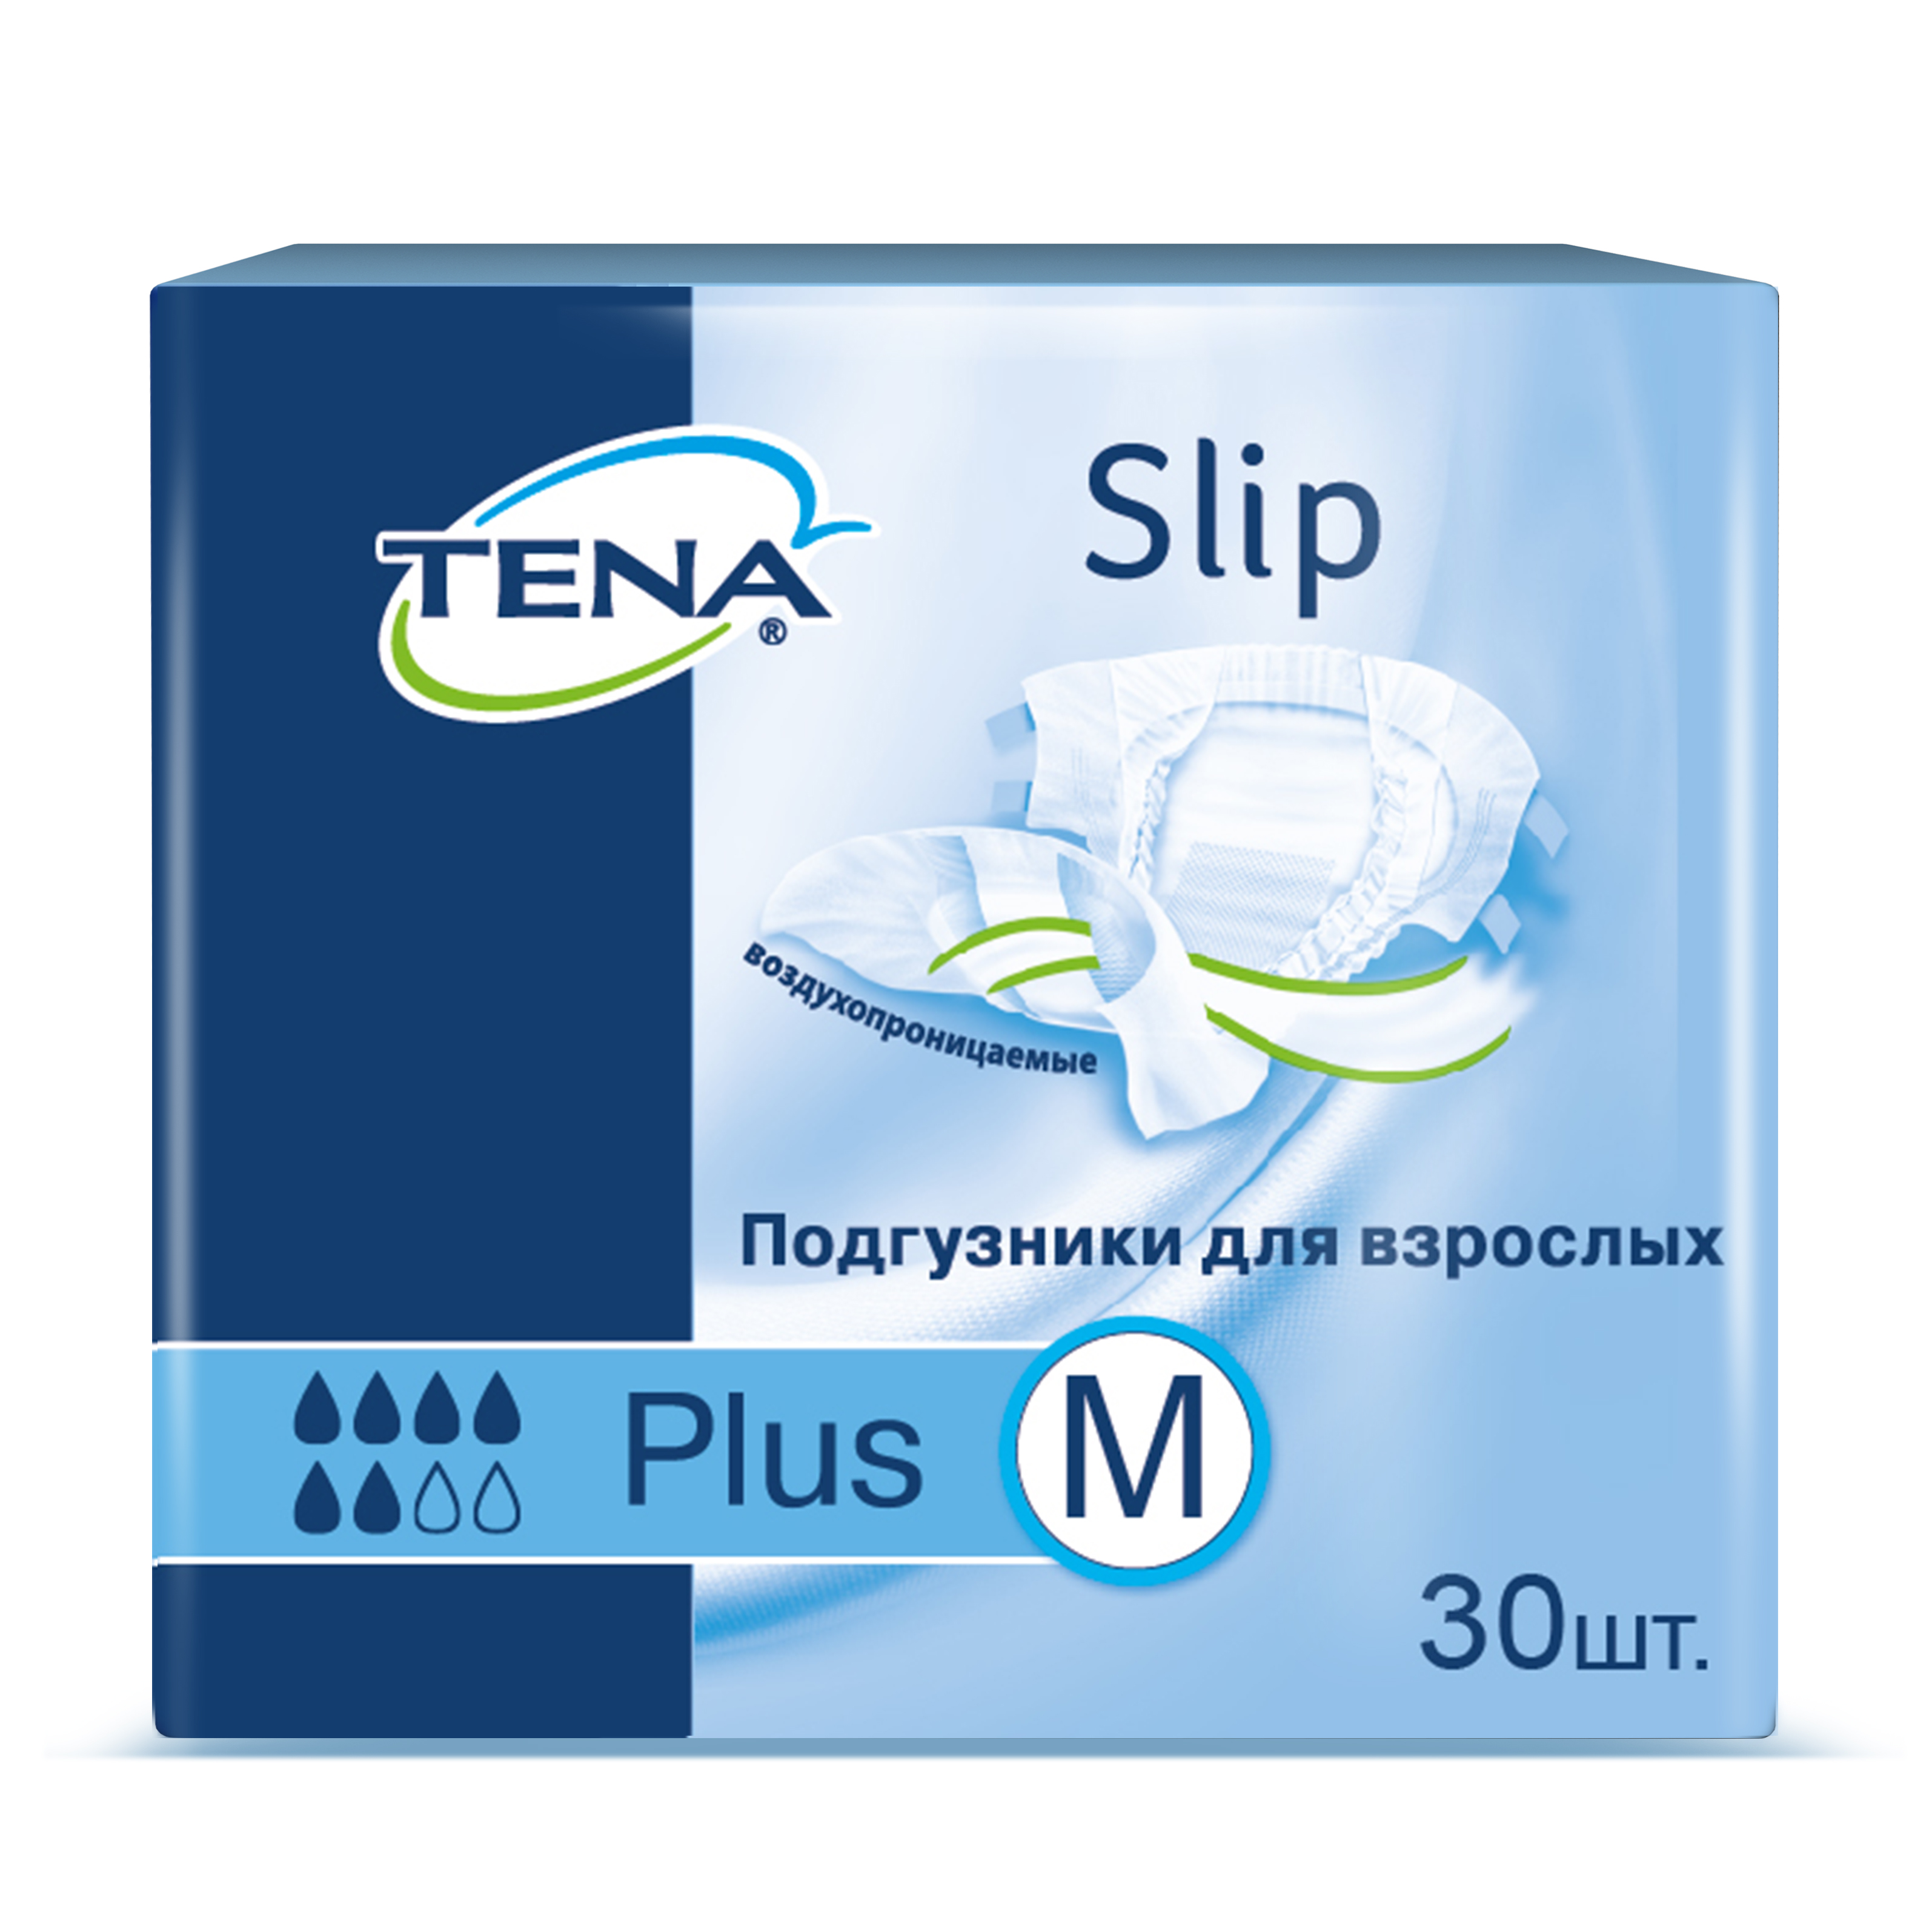 Купить Подгузники для взрослых TENA Slip Plus М дыщащие 30 шт.